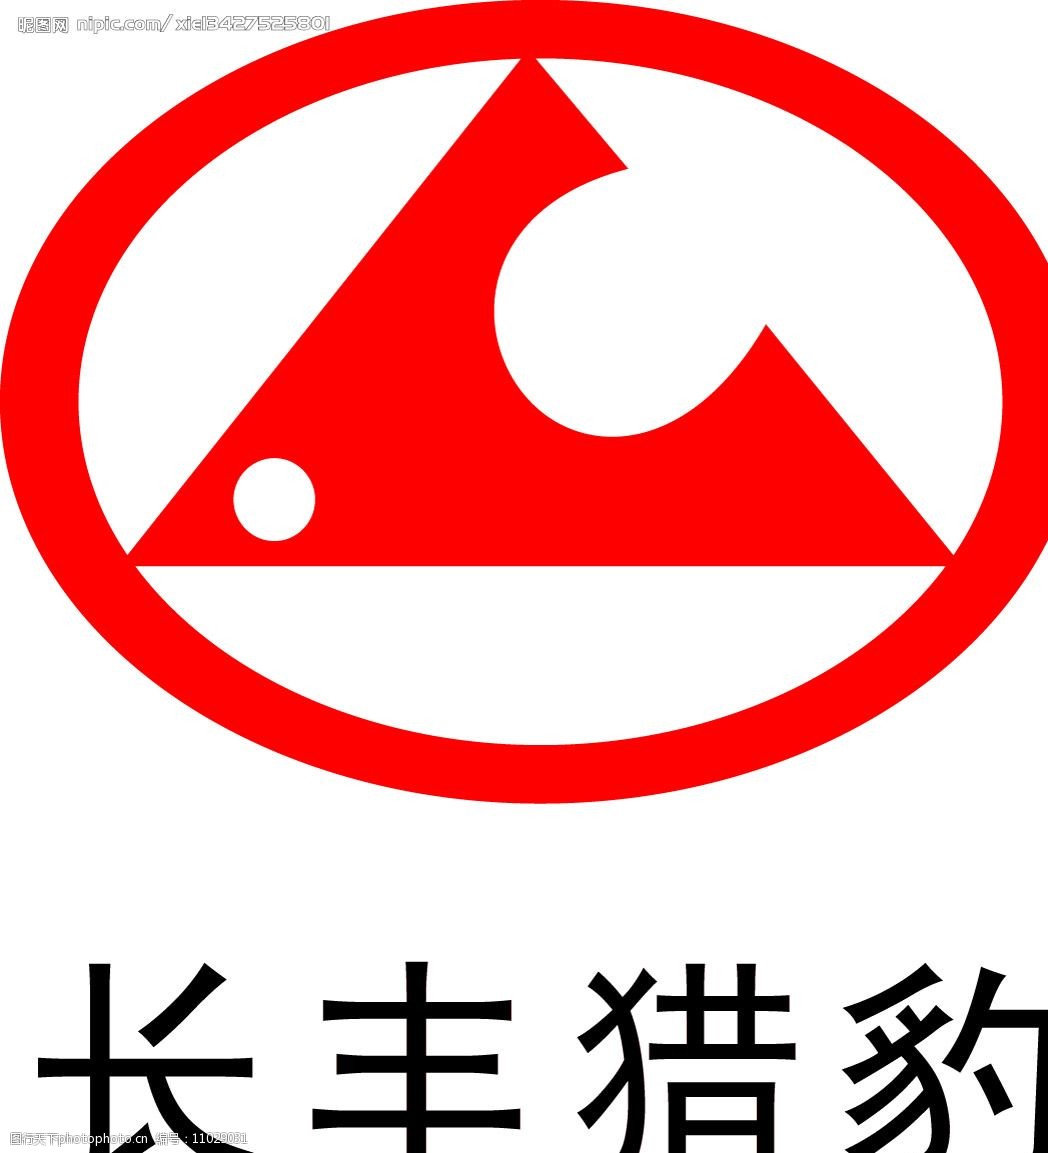 关键词:长丰猎豹汽车logo 标识标志图标 企业logo标志 矢量图库   cdr